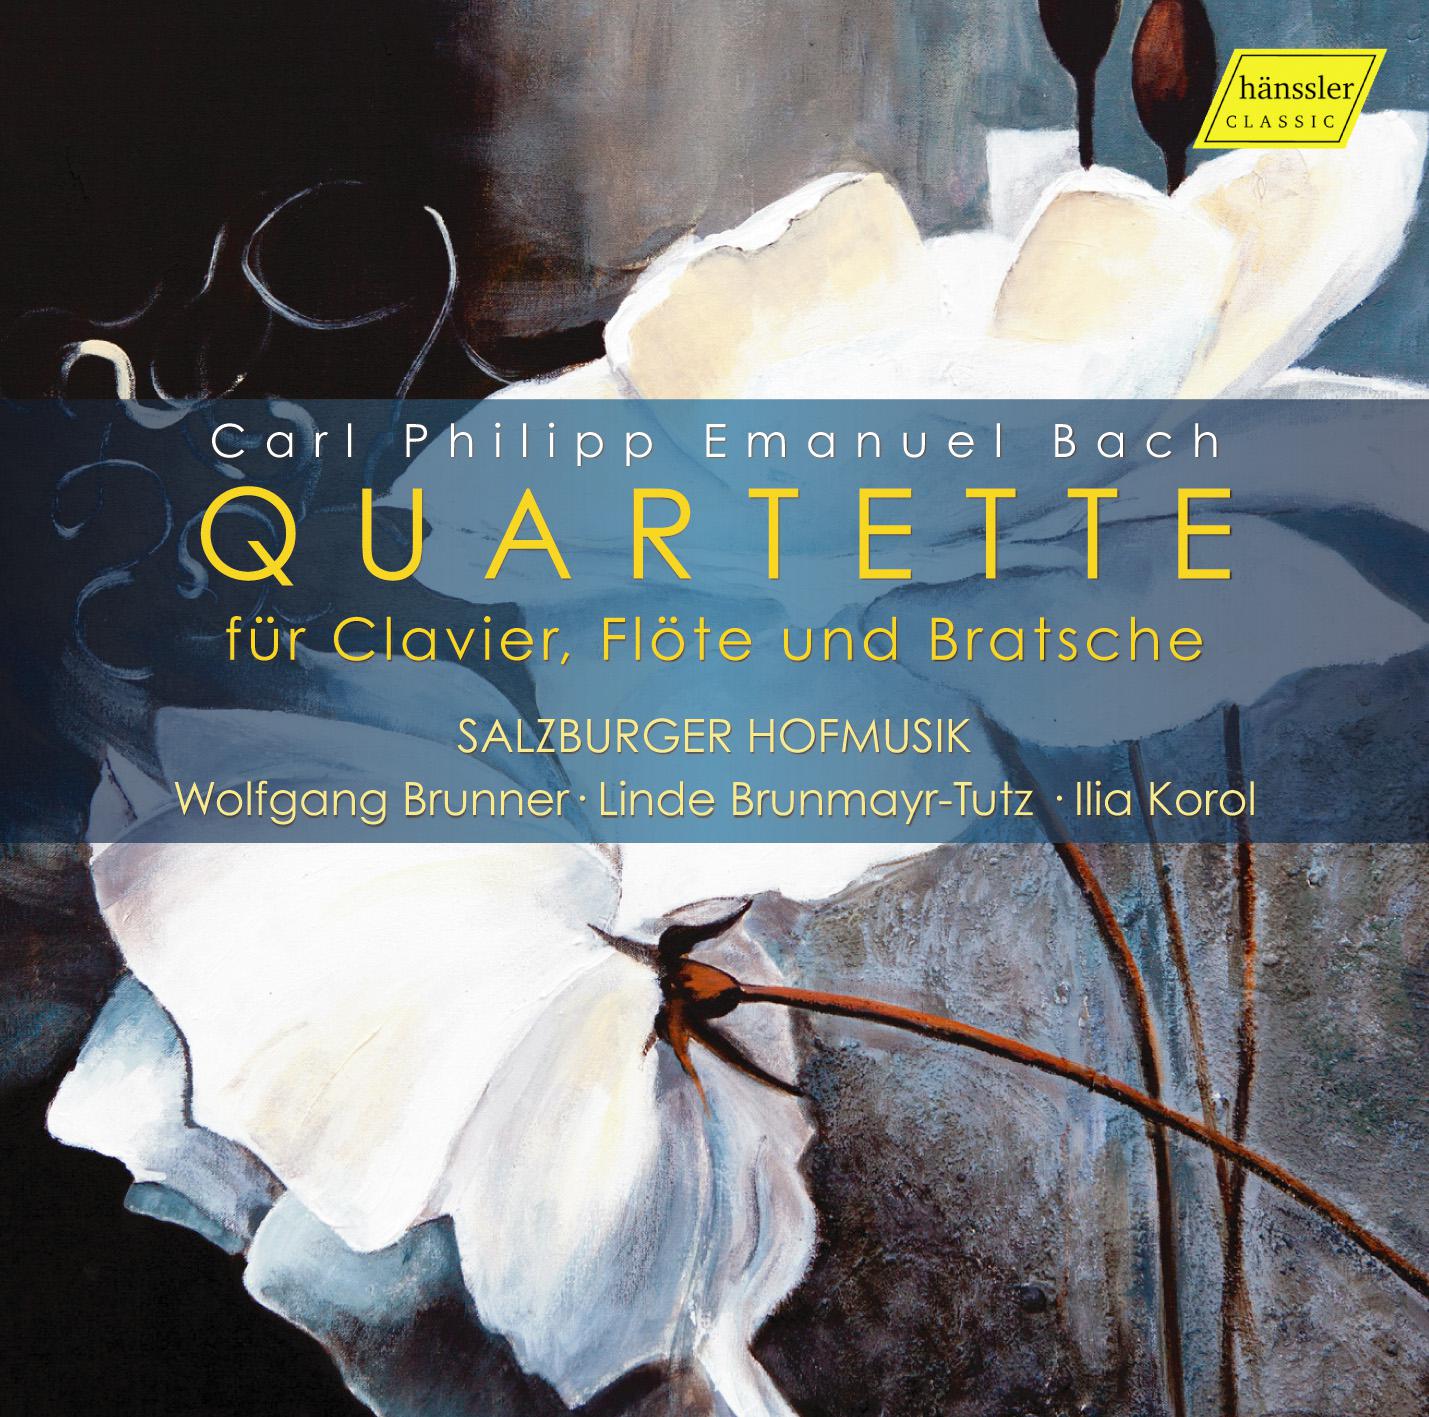 Quartette for Keyboard, Flute & Viola in D Major, Wq. 94: III. Allegro di molto